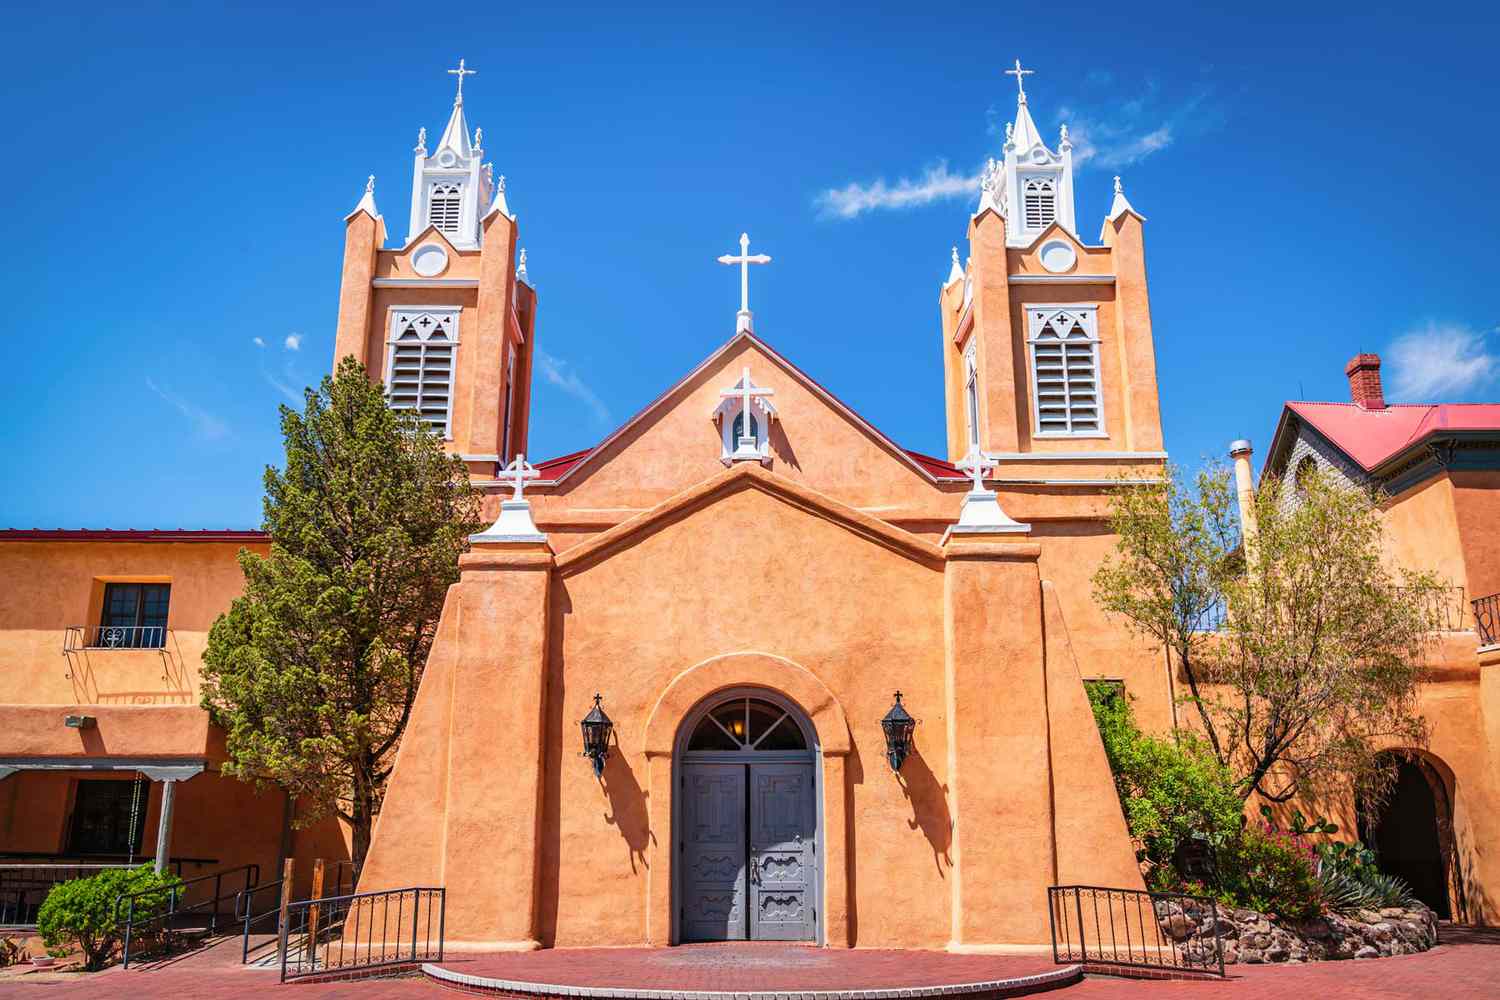 L'église San Felipe de Neri du XVIIIe siècle, dans la vieille ville d'Albuquerque